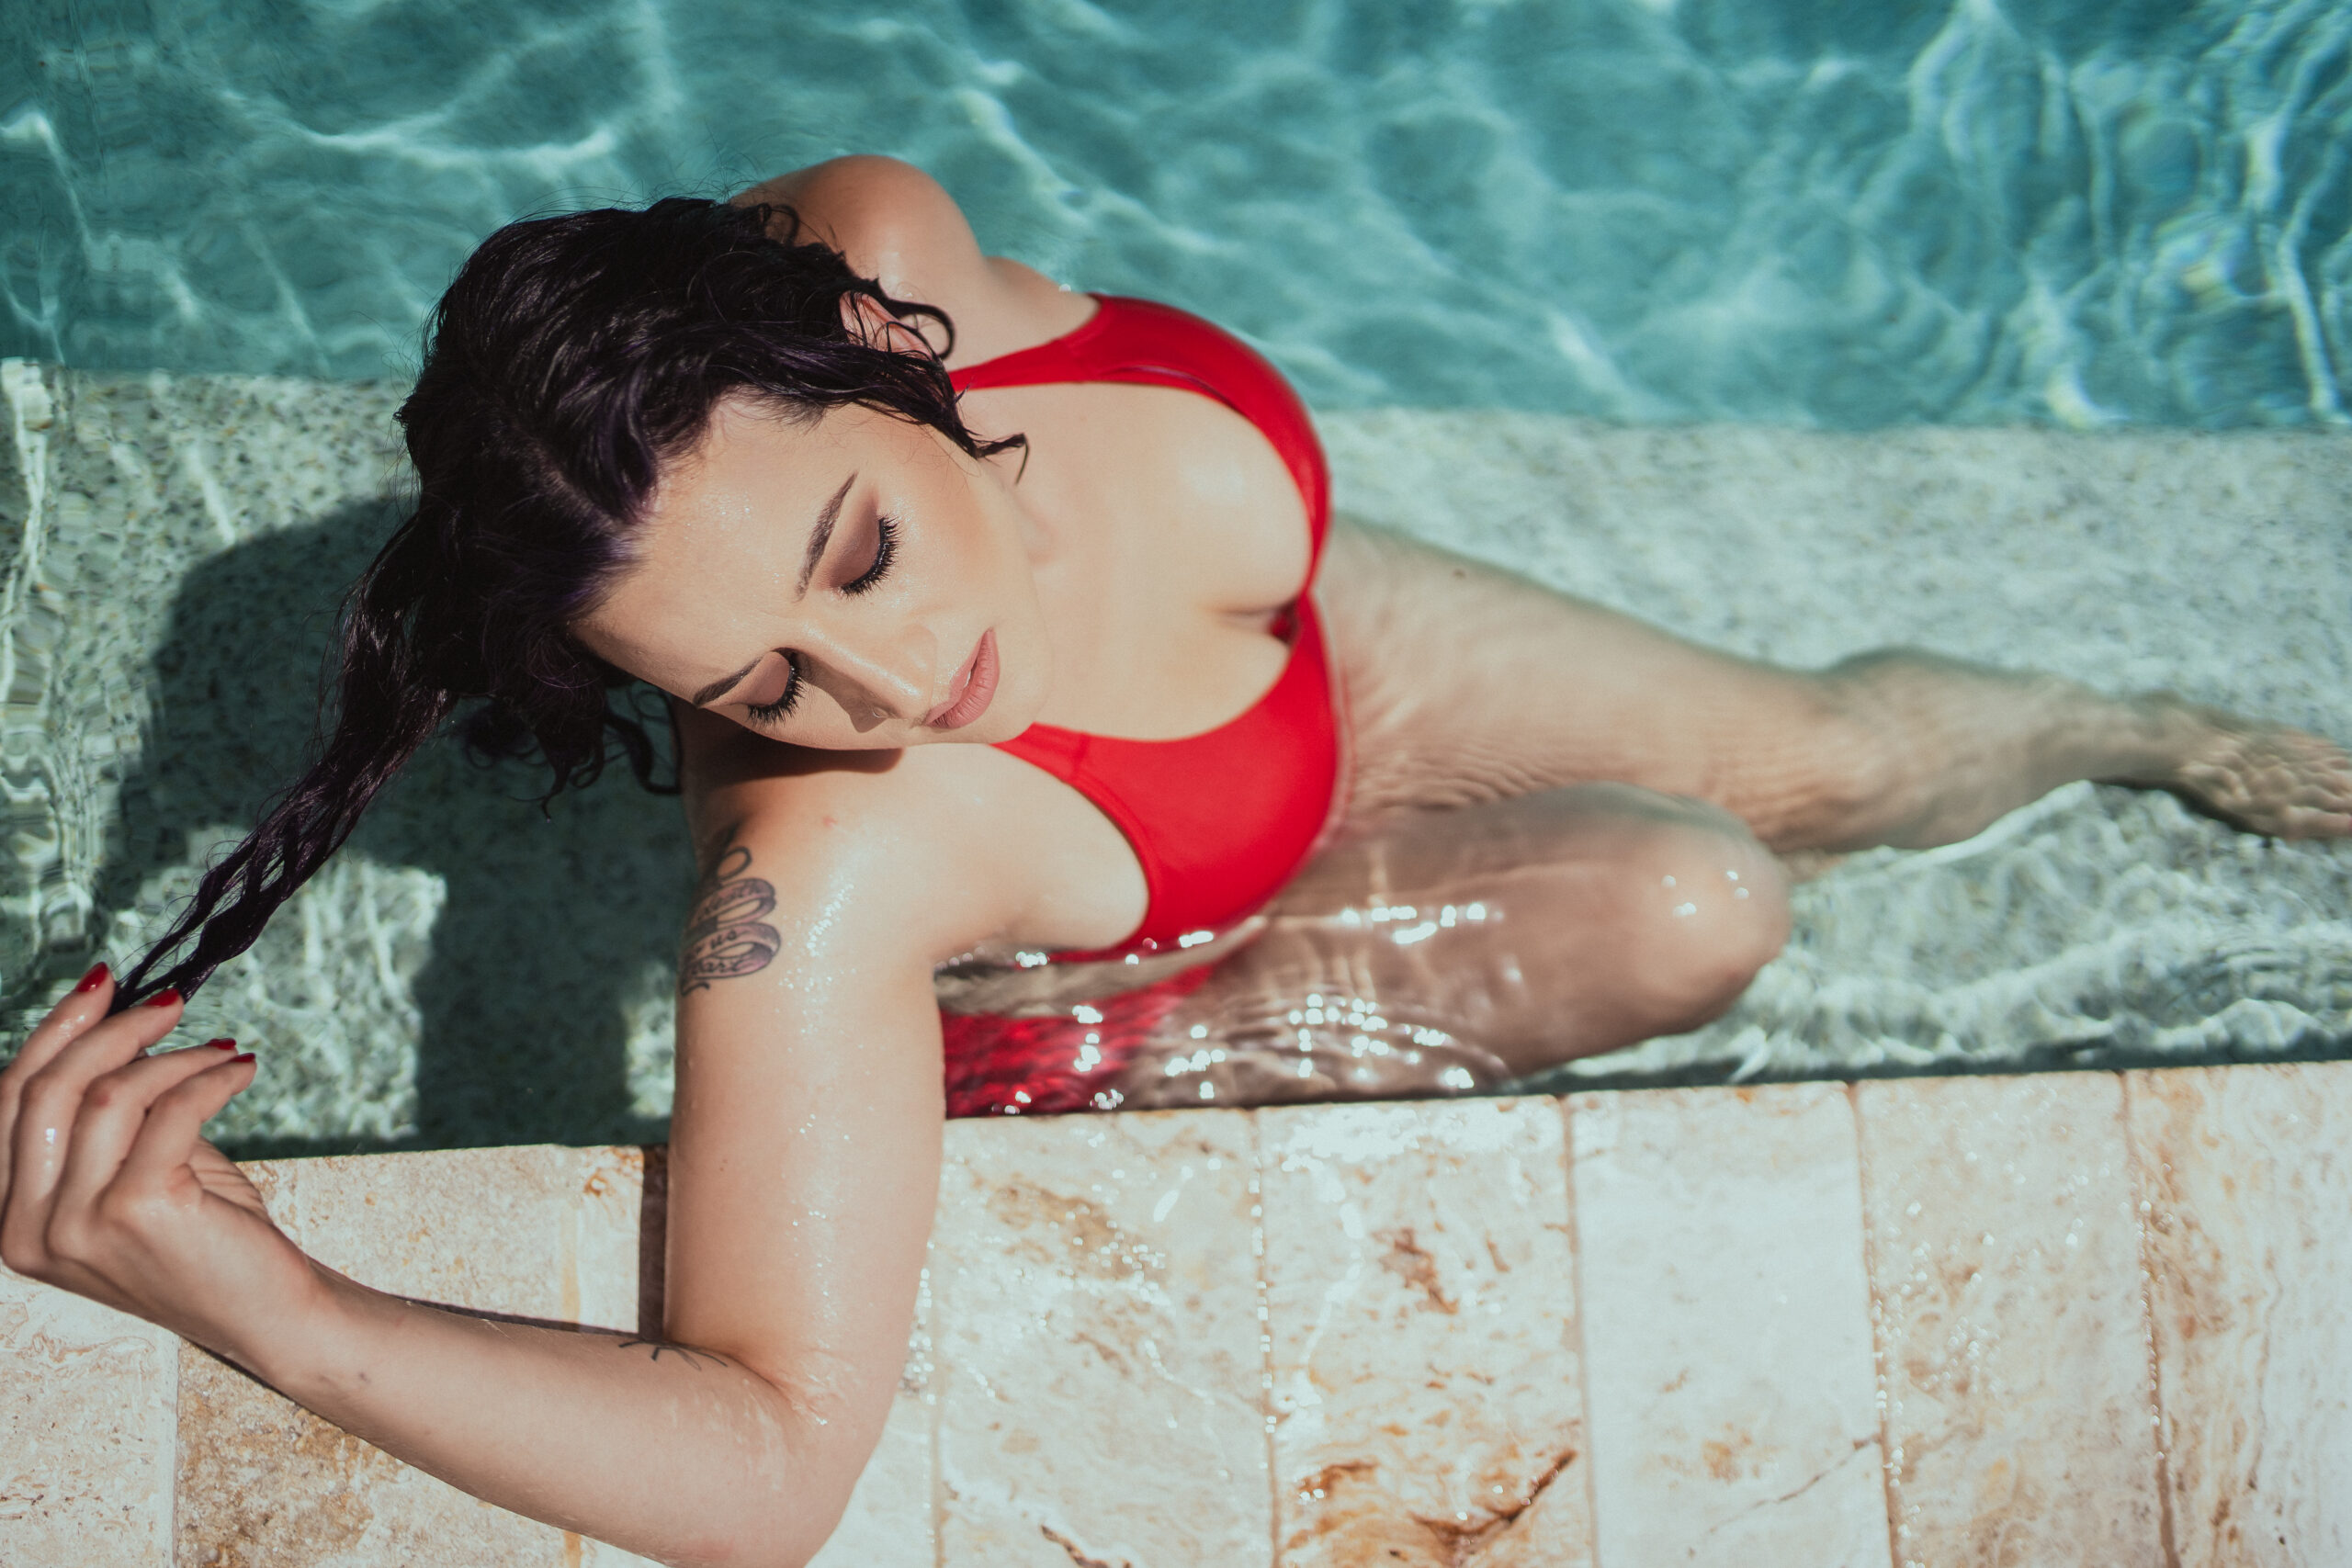 Pool-themed outdoor boudoir shoot with Tampa Florida boudoir photographer Tami Keehn.